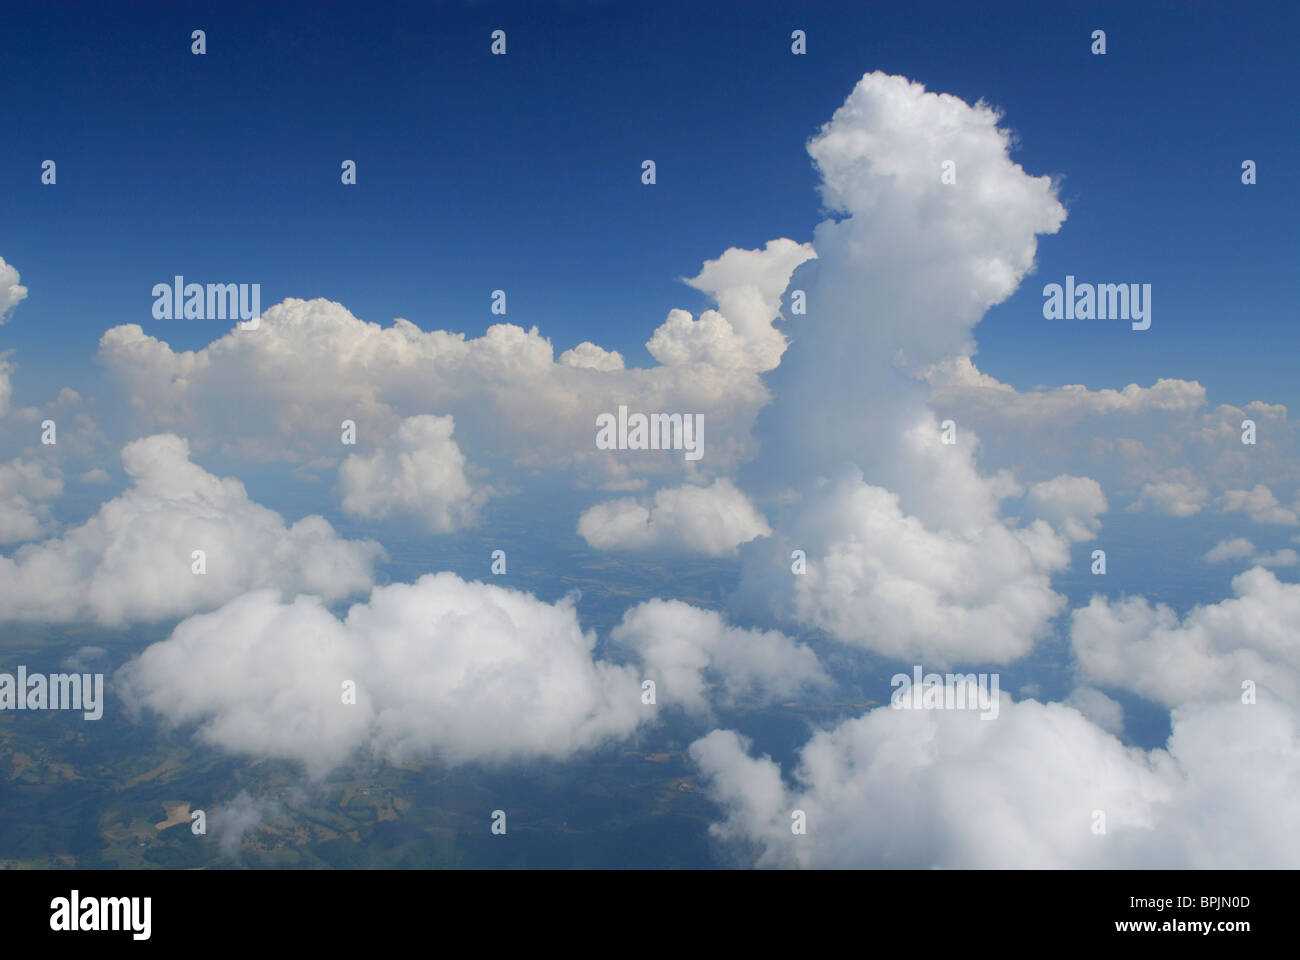 Luftbild von einer Wolke Congestus (Cg) und Cumuluswolken (Cu), Frankreich Stockfoto